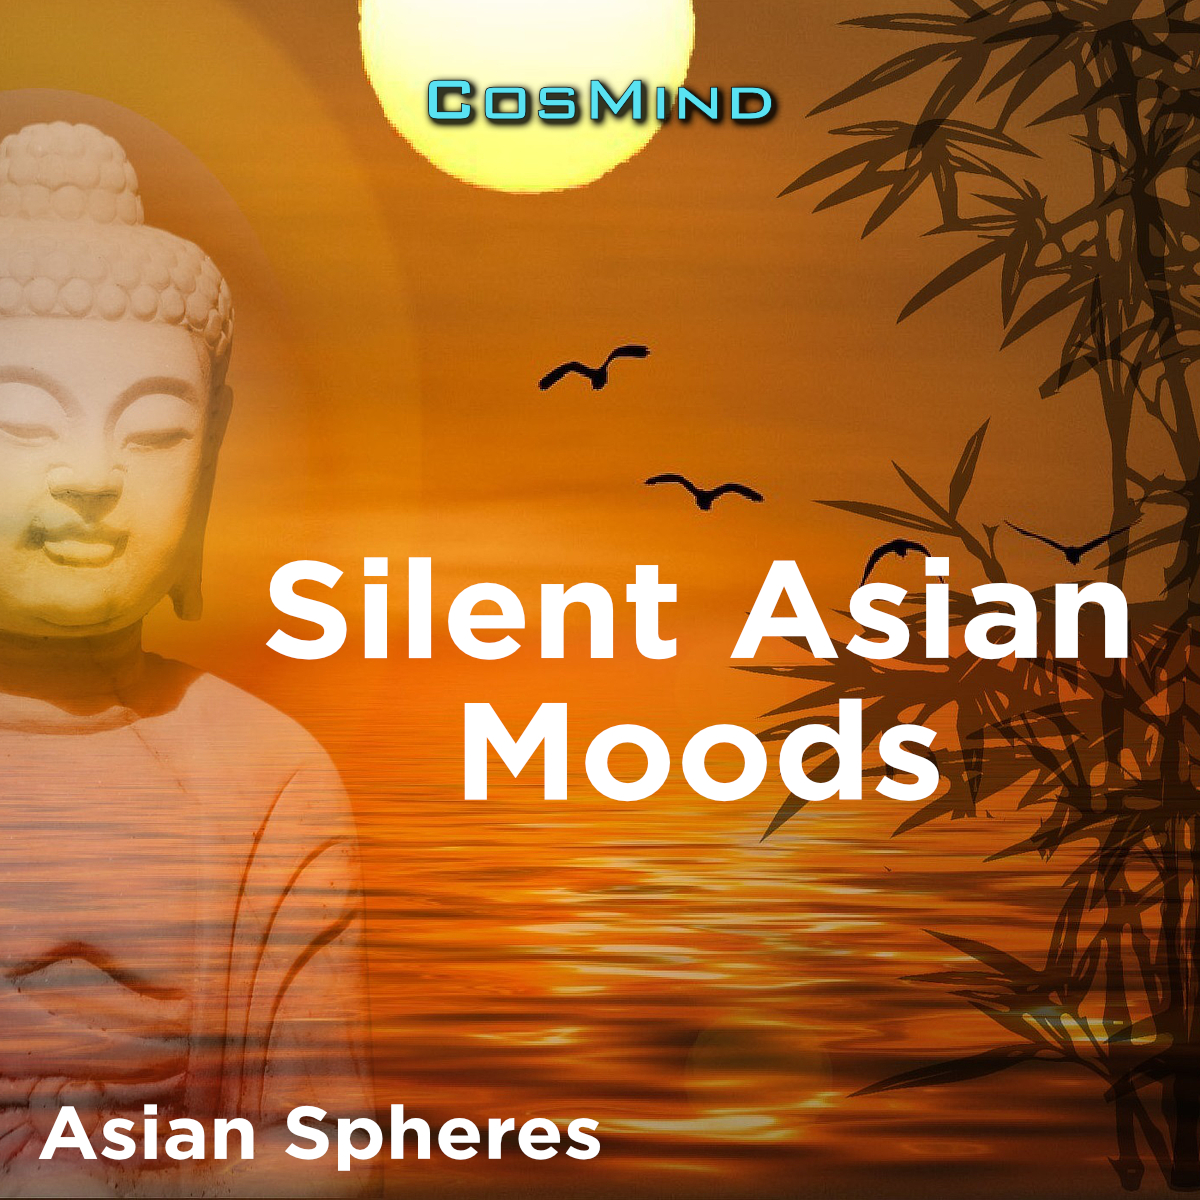 Asian Spheres (Silent Asian Moods)